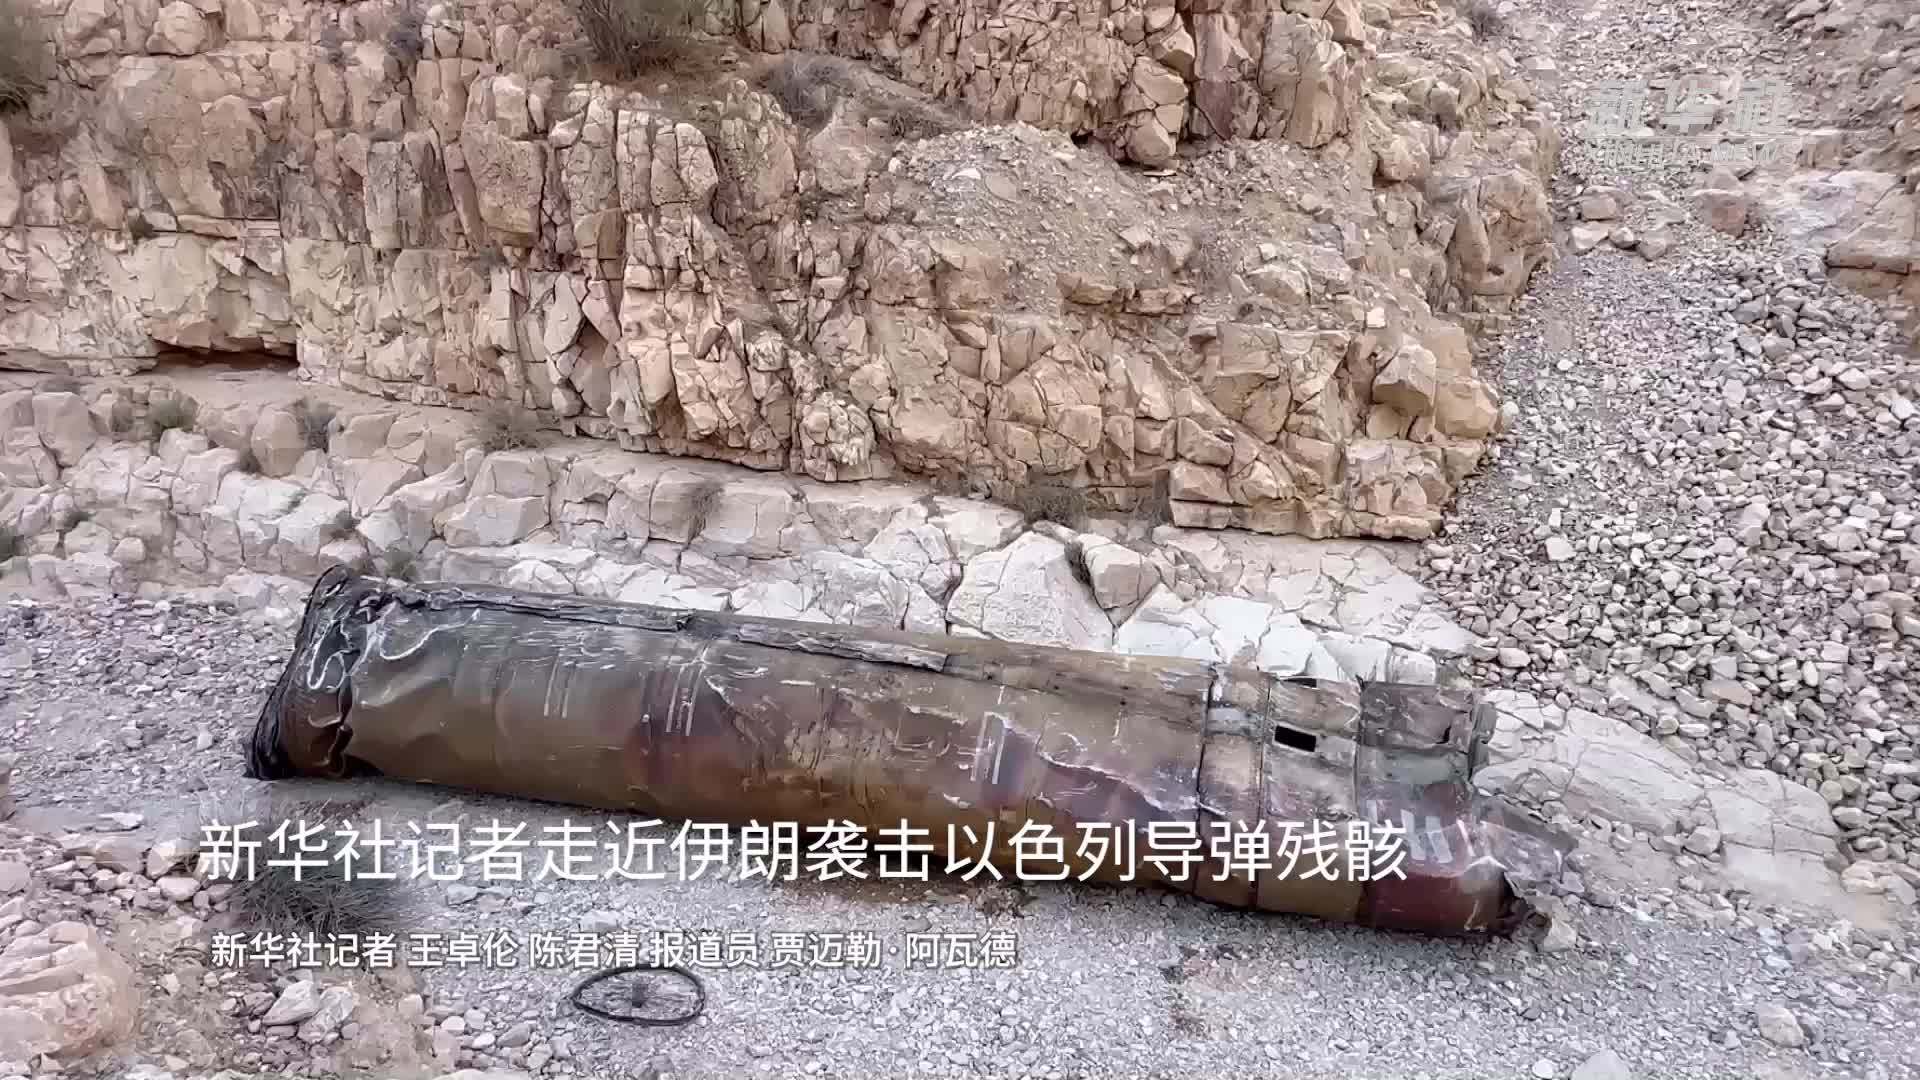 新华社记者走近伊朗袭击以色列导弹残骸